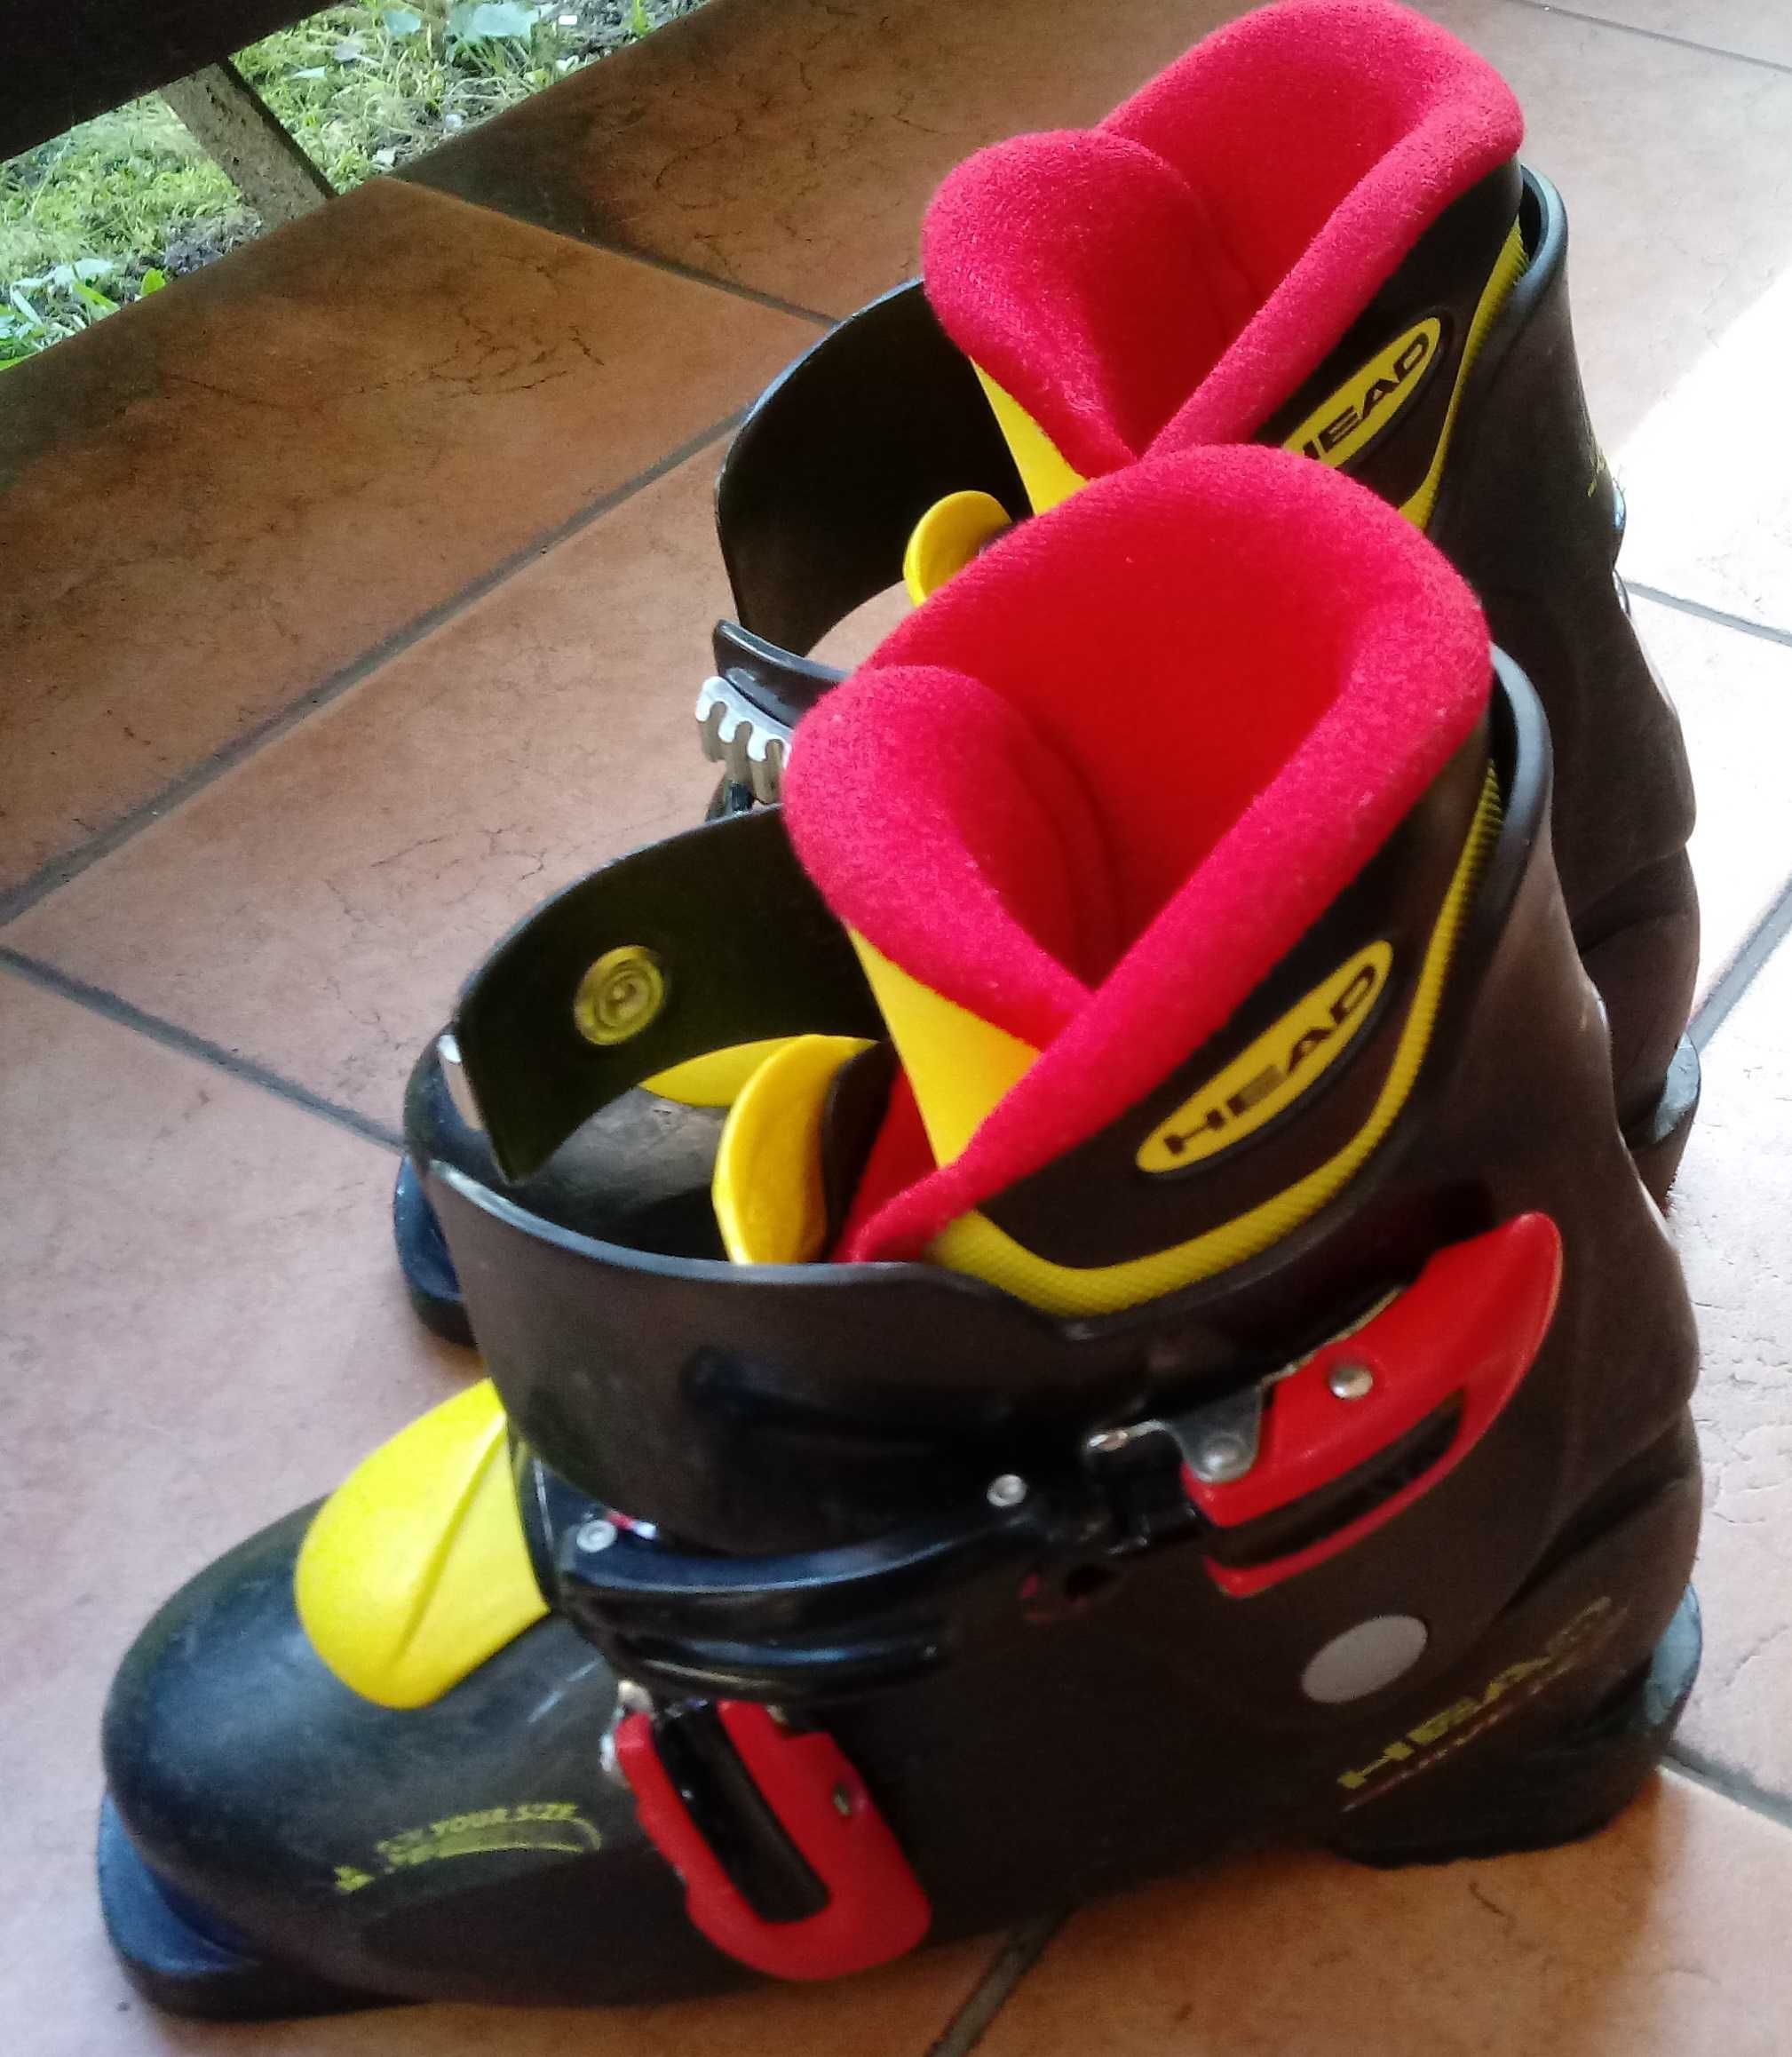 Buty narciarskie dziecięce HEAD CARVE X2 rozmiar 21-22,5